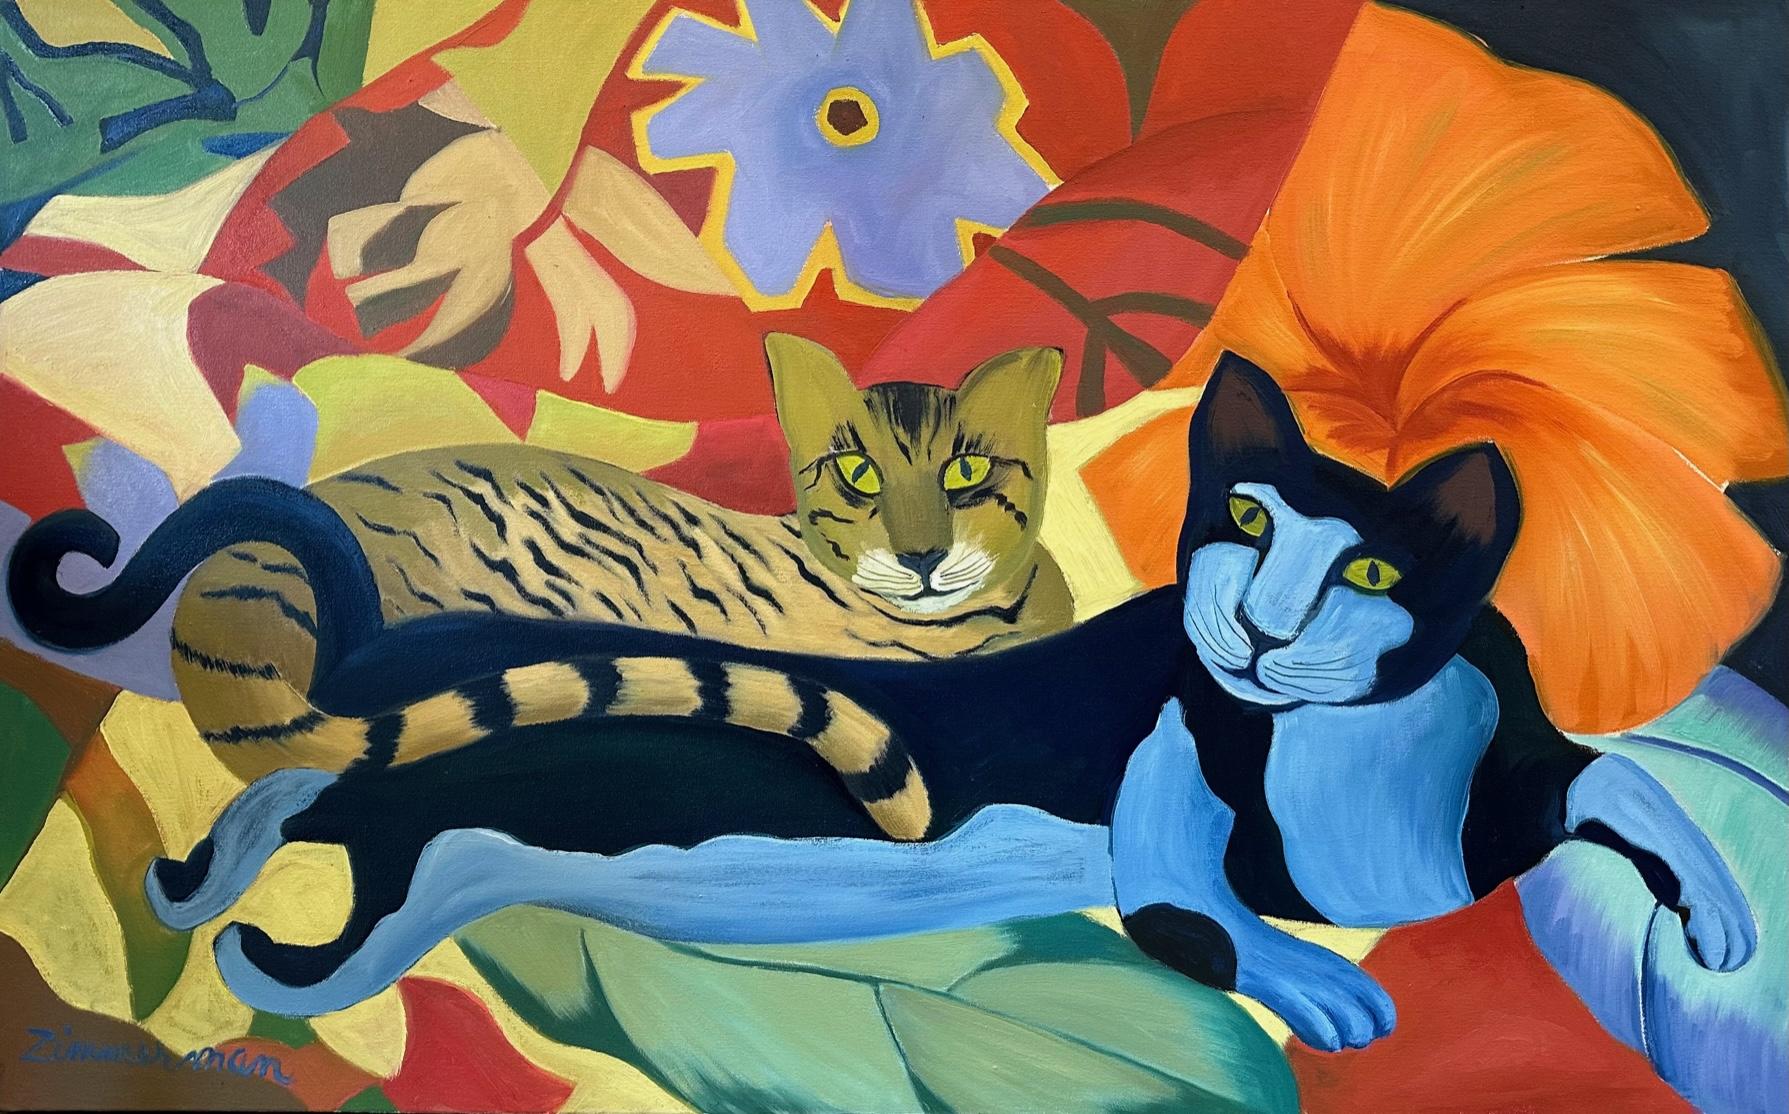 Boots N Katz" ist ein fröhliches und lebhaftes Gemälde, das die verspielte und neugierige Natur von Katzen in einer schönen Blumenlandschaft einfängt.

Die leuchtenden und kräftigen Farben der Blumen und Katzen können jedem Raum mehr Energie und